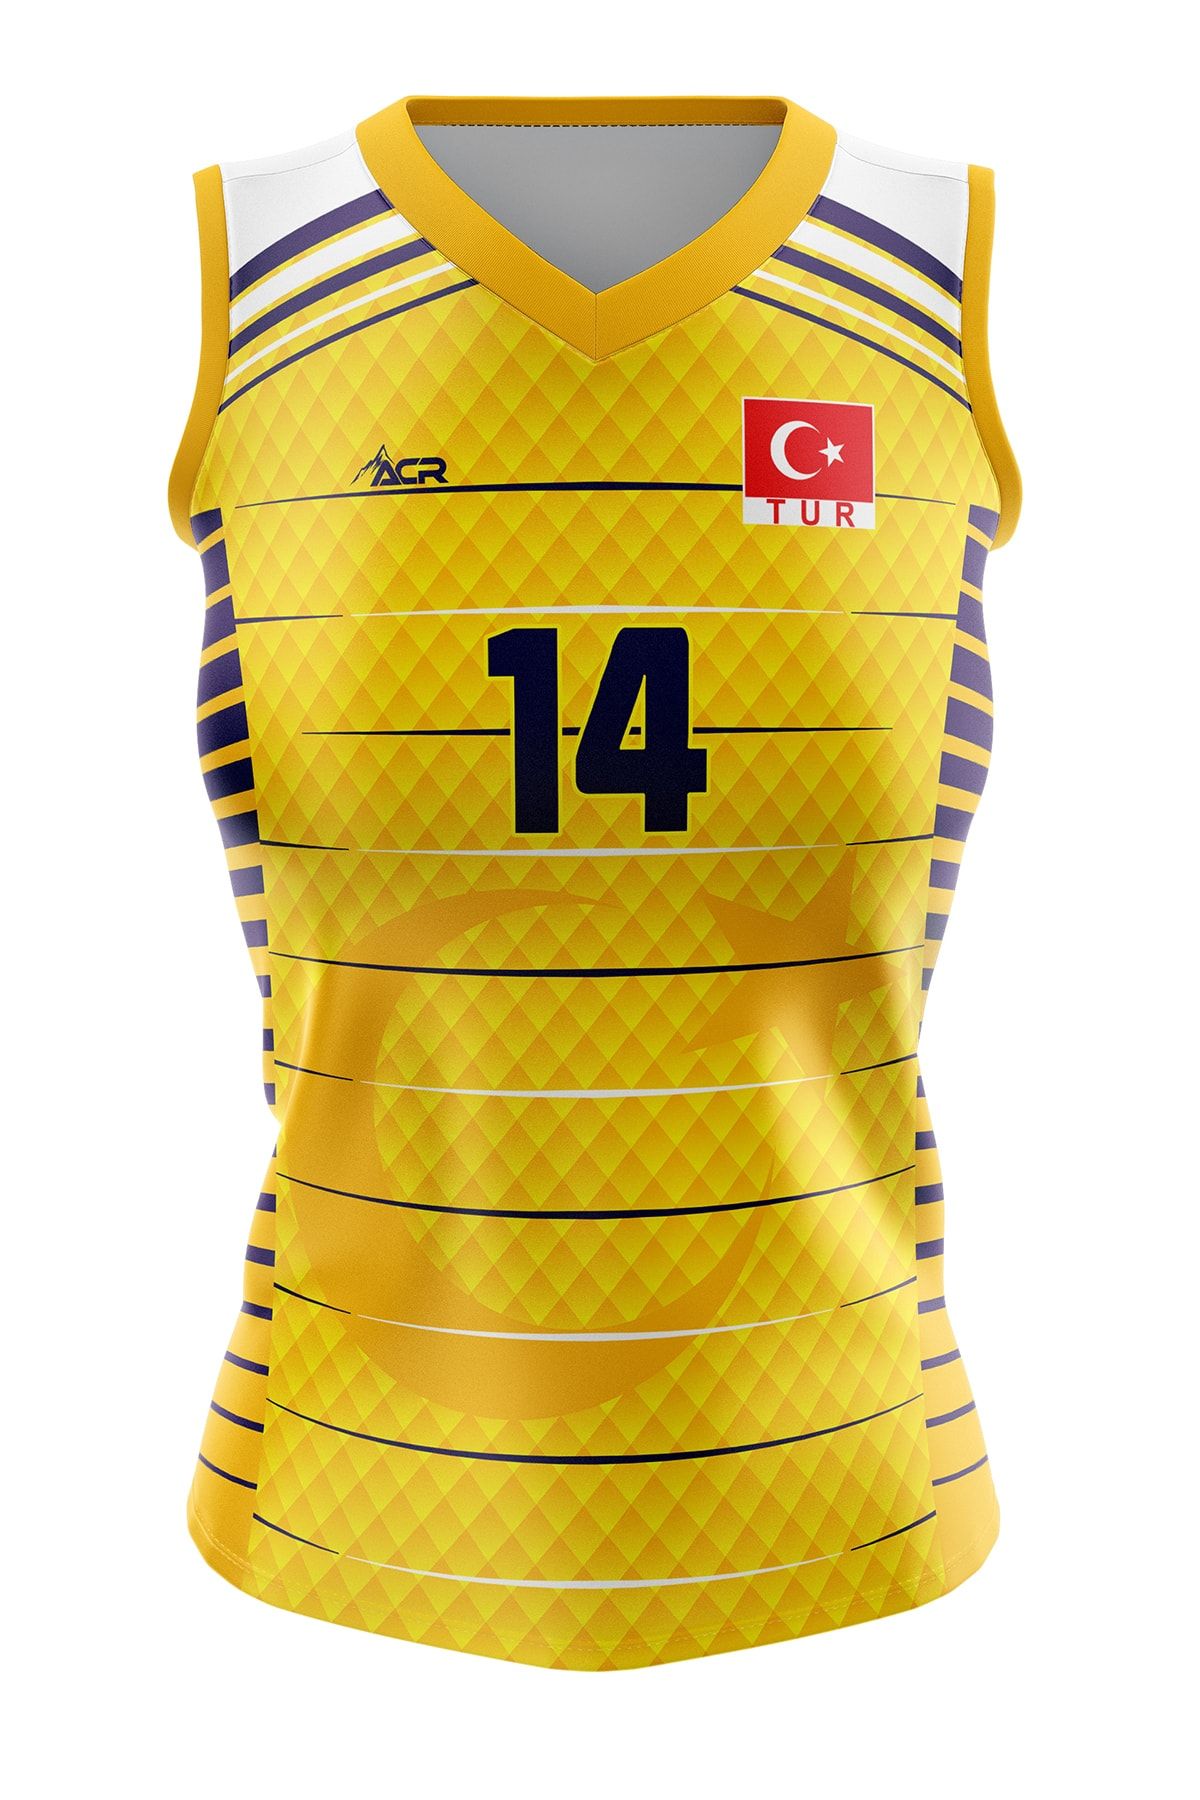 ACR Giyim Tekstil Forma Baskı Voleybol Forması Türkiye Model Dijital Baskı Kişiye Özel Tasarım Tek Üst